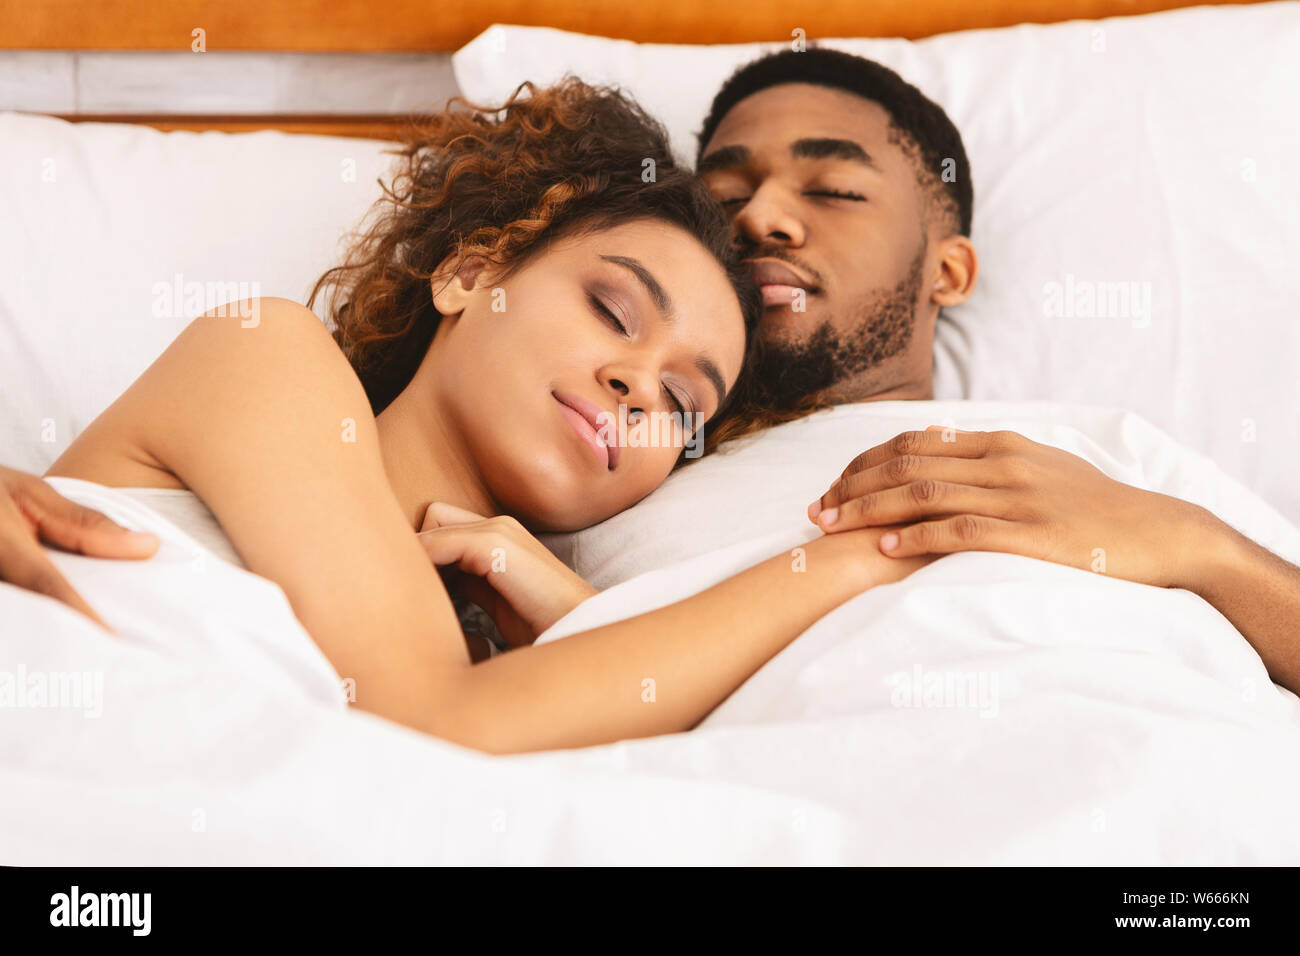 Liebespaar im Bett schlafen und umarmen Stockfotografie - Alamy